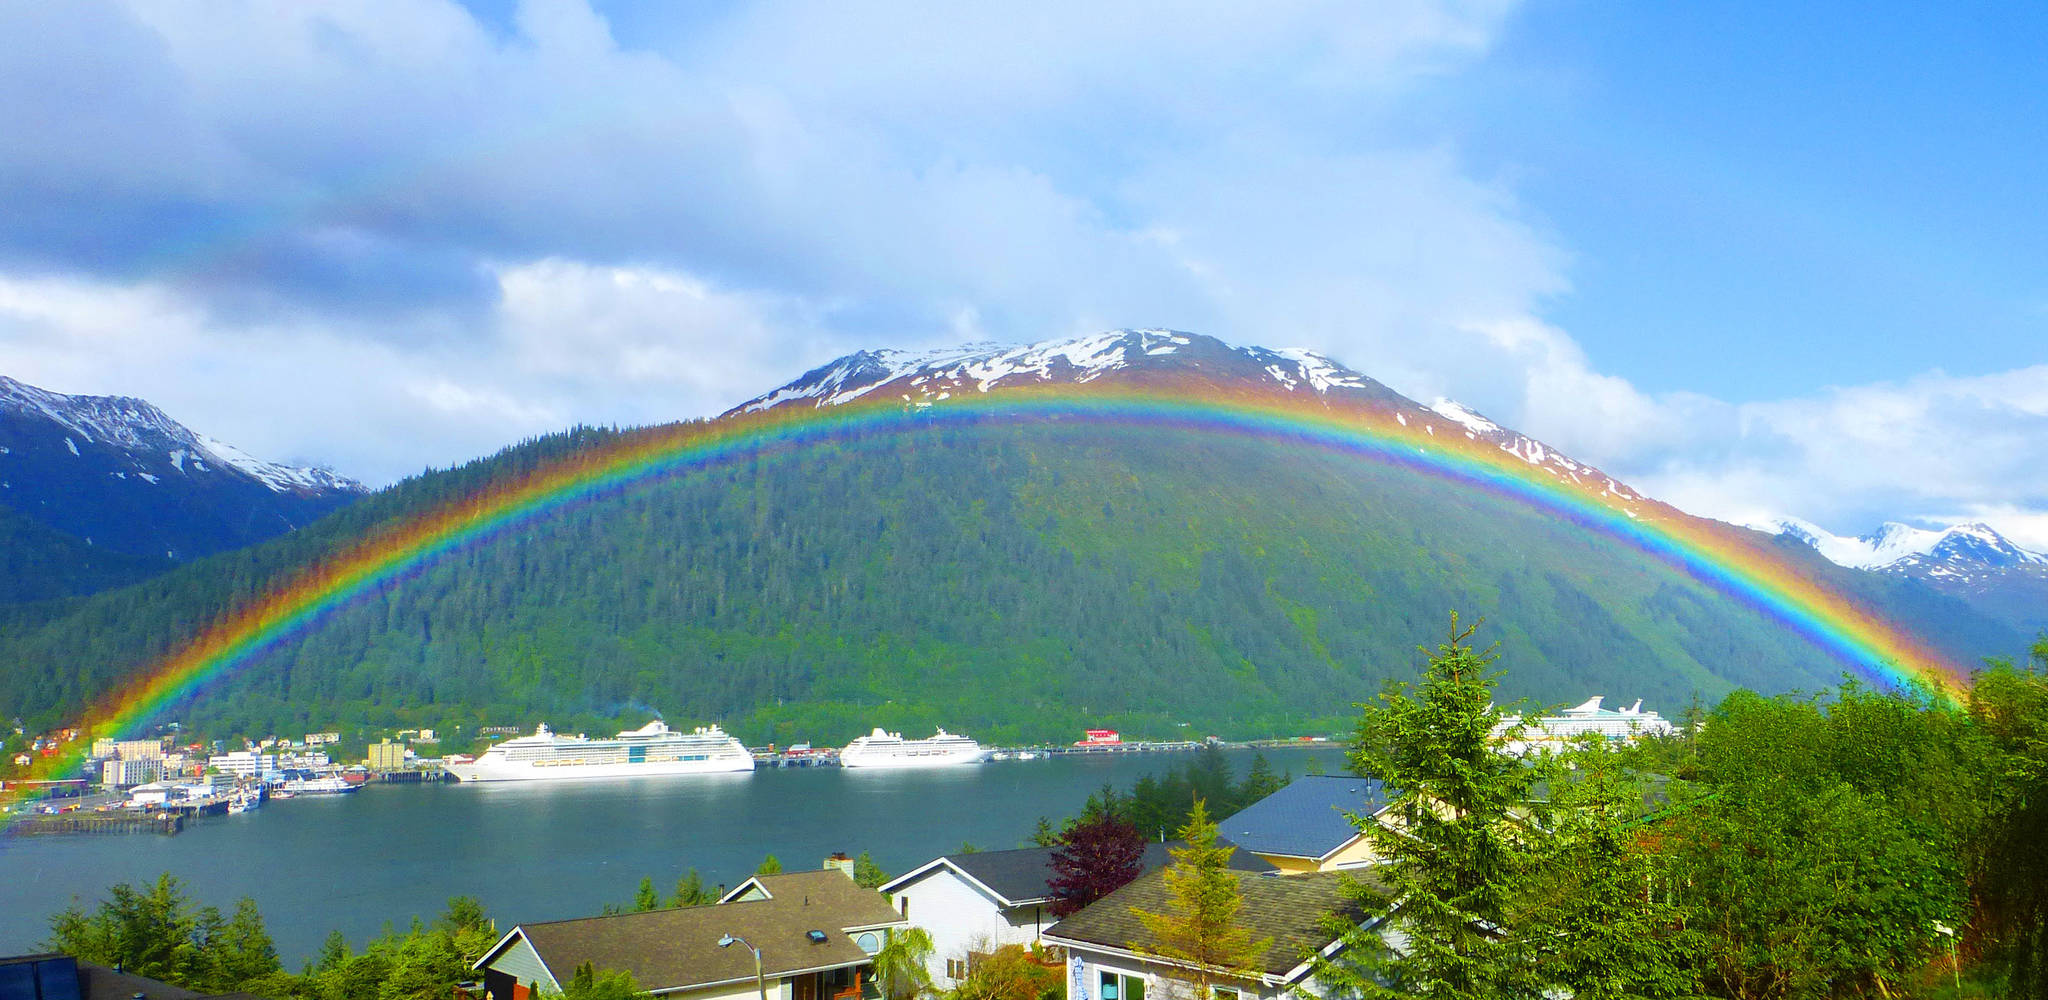 A rainbow over Juneau. Photo by Denise Carroll.